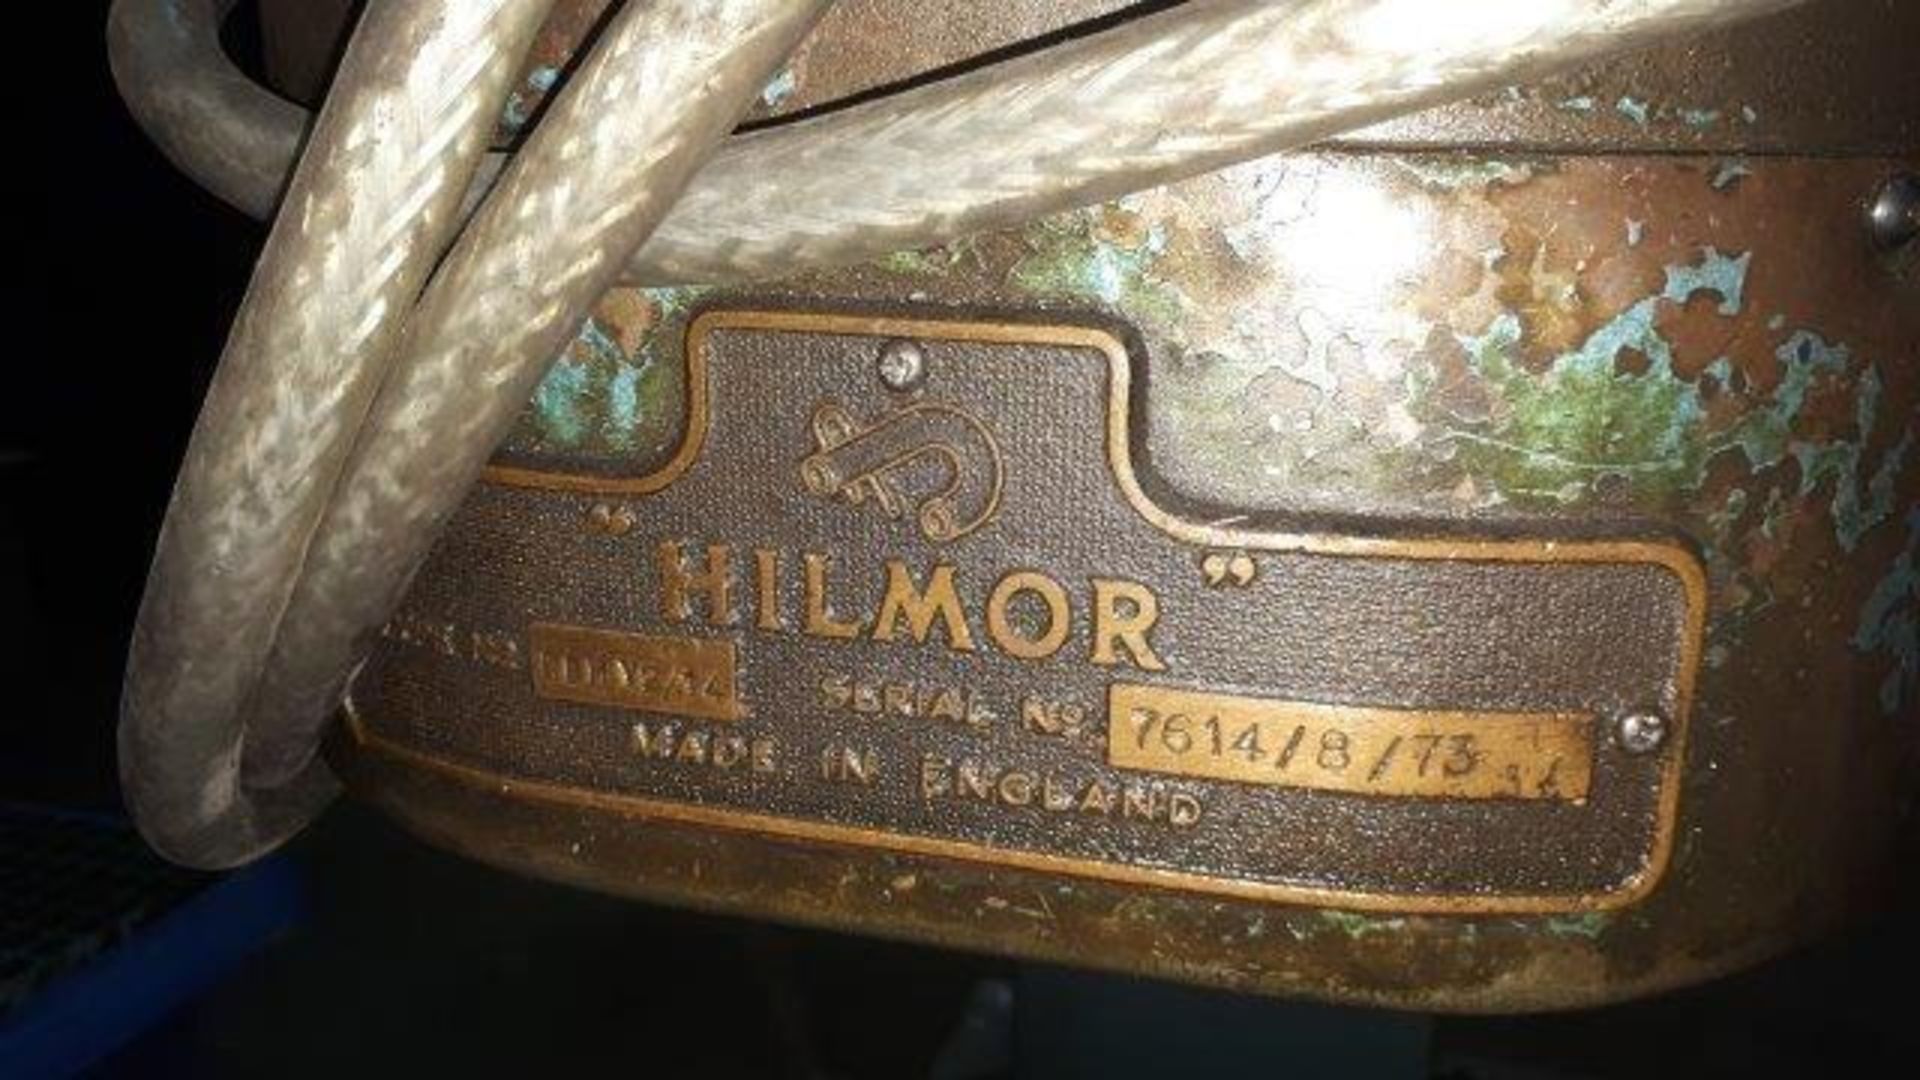 Hillmore pipe bender 415v - Image 4 of 7